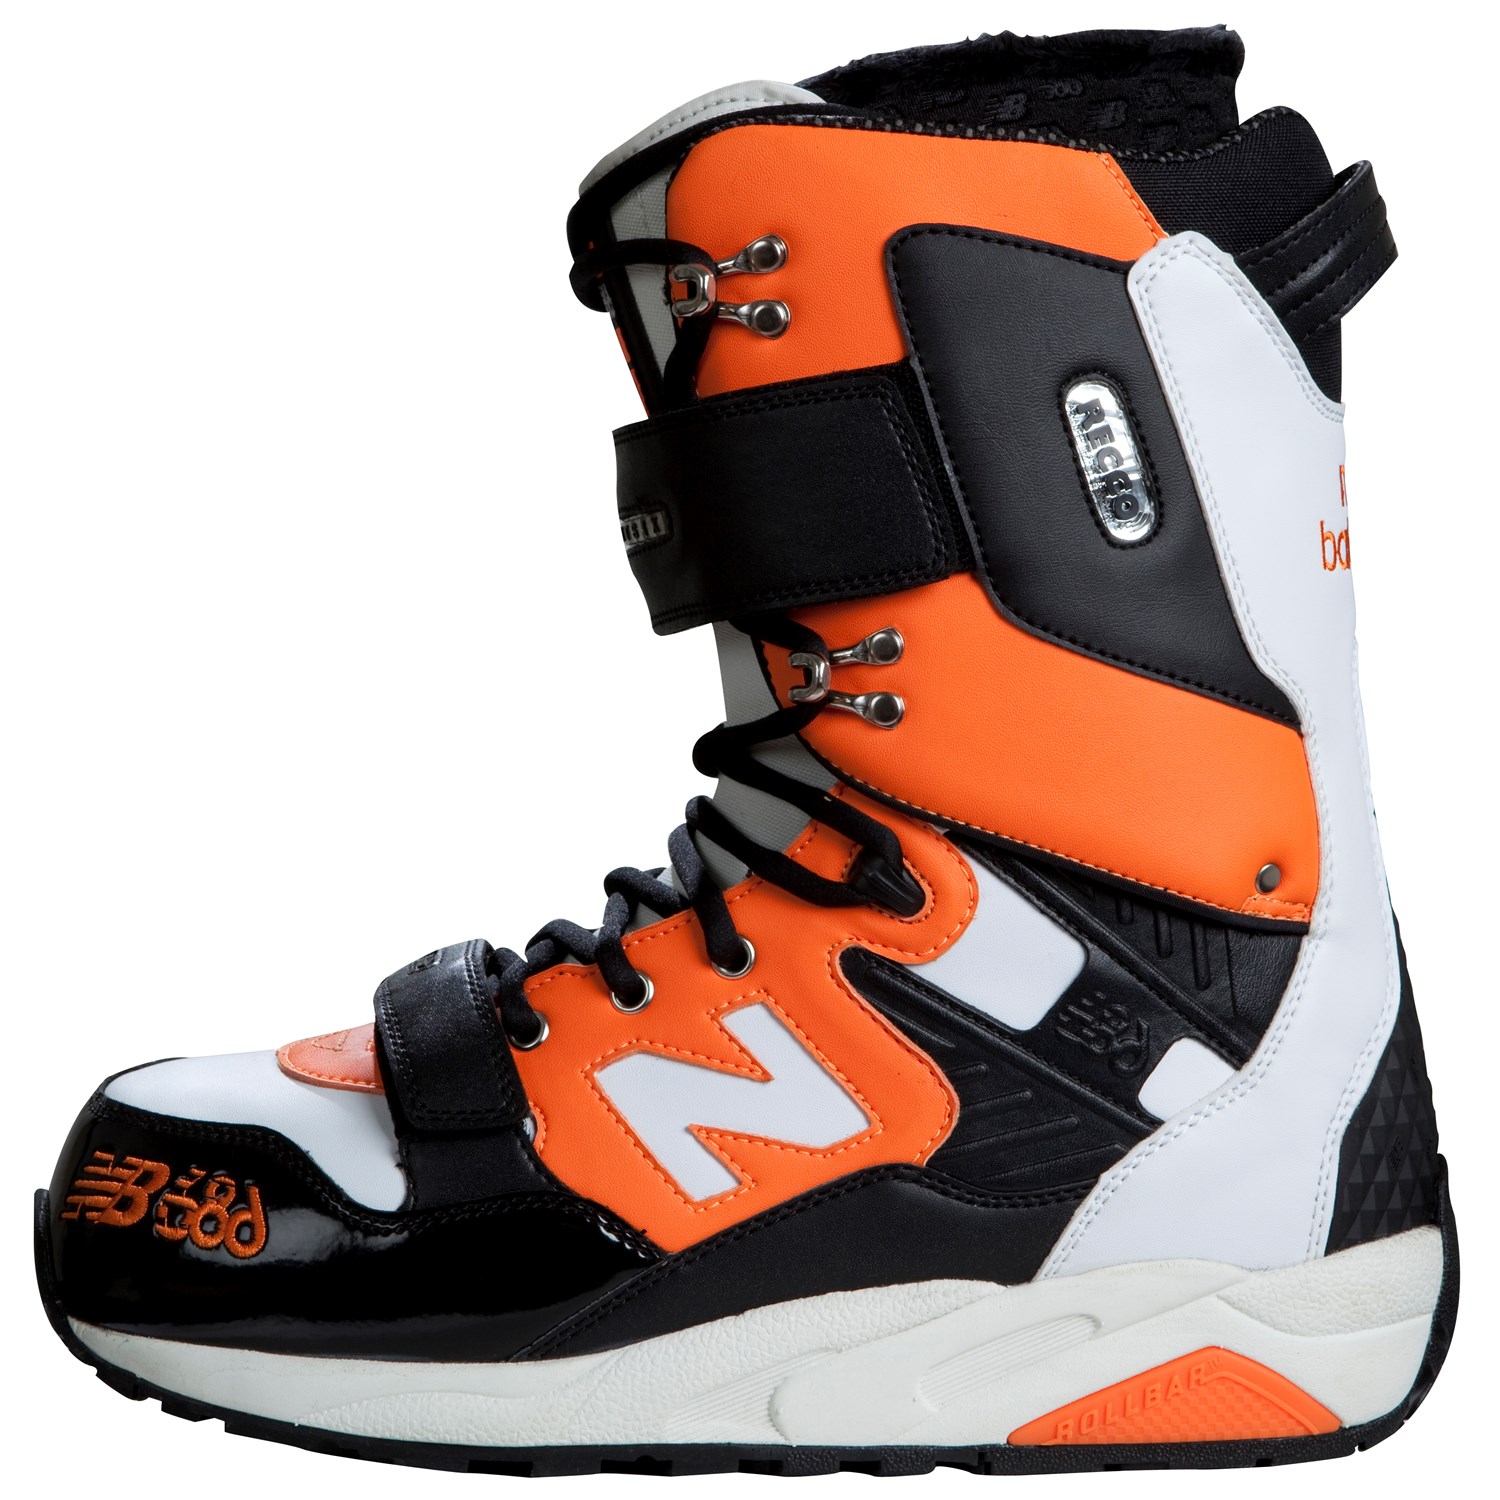 New Balance 580 Snowboard Boots 2011 